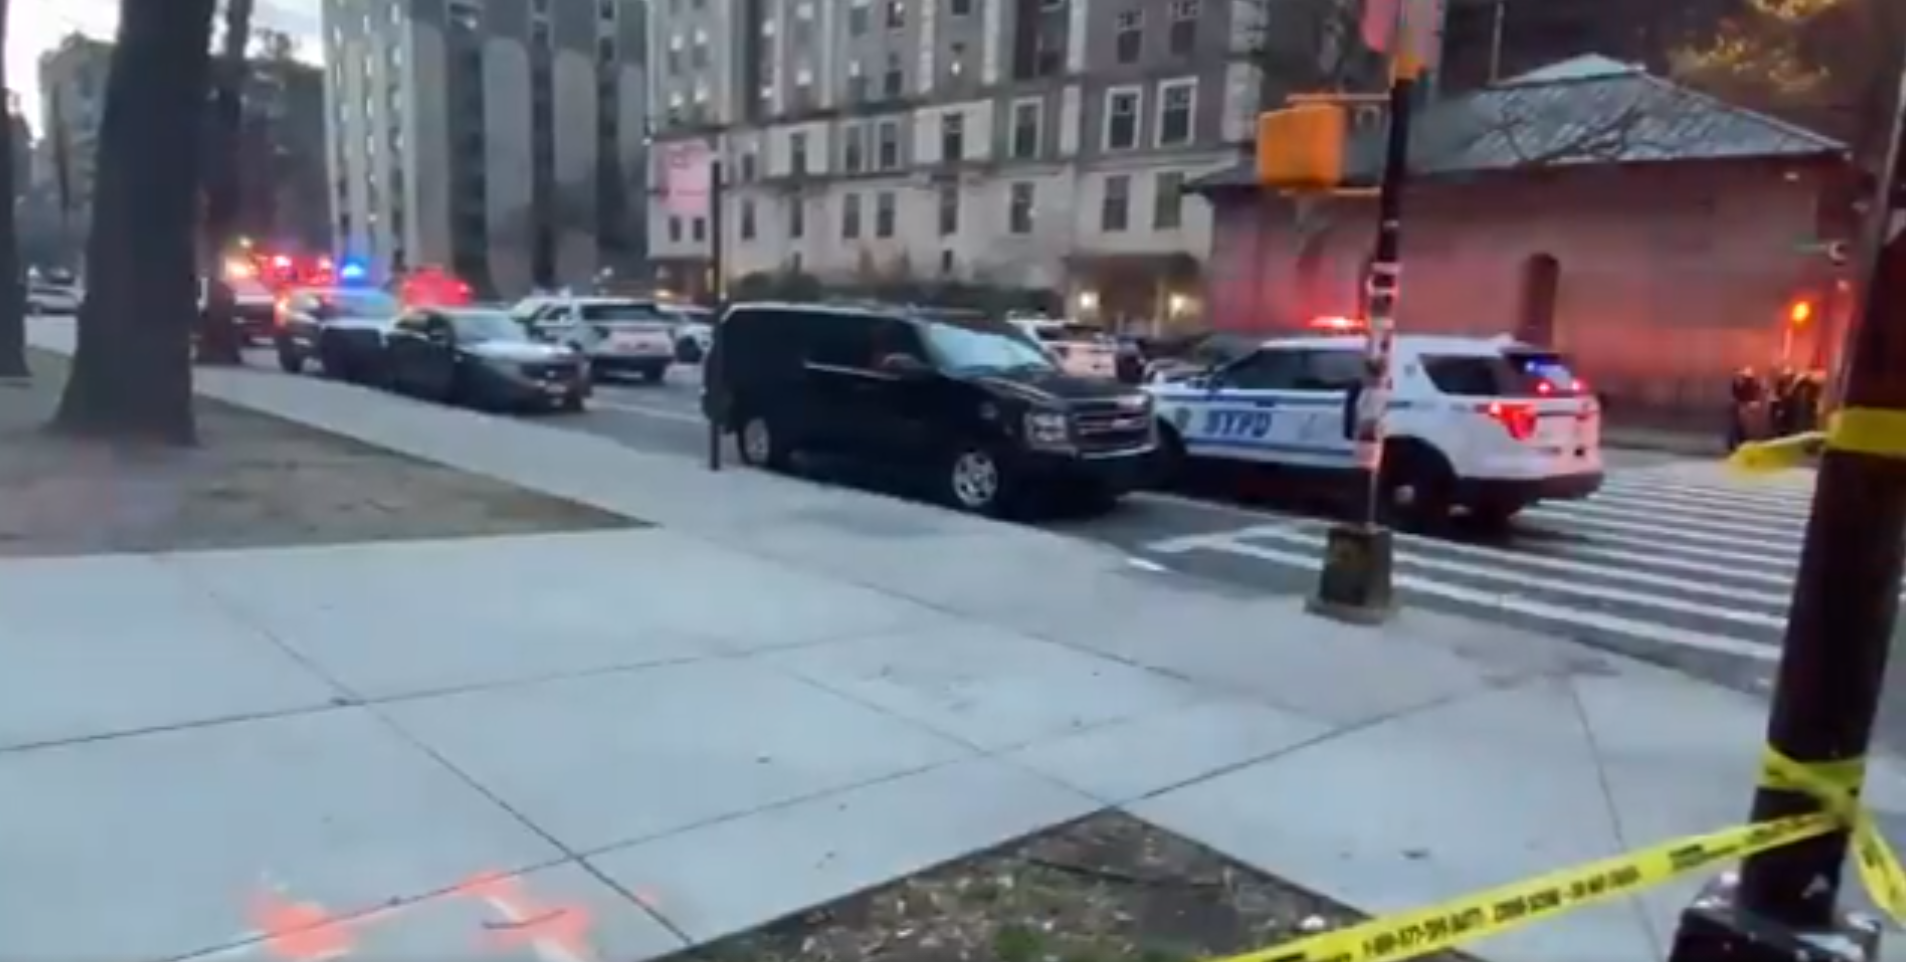 Nova York: La policia neutralitza un home armat que ha disparat a una església